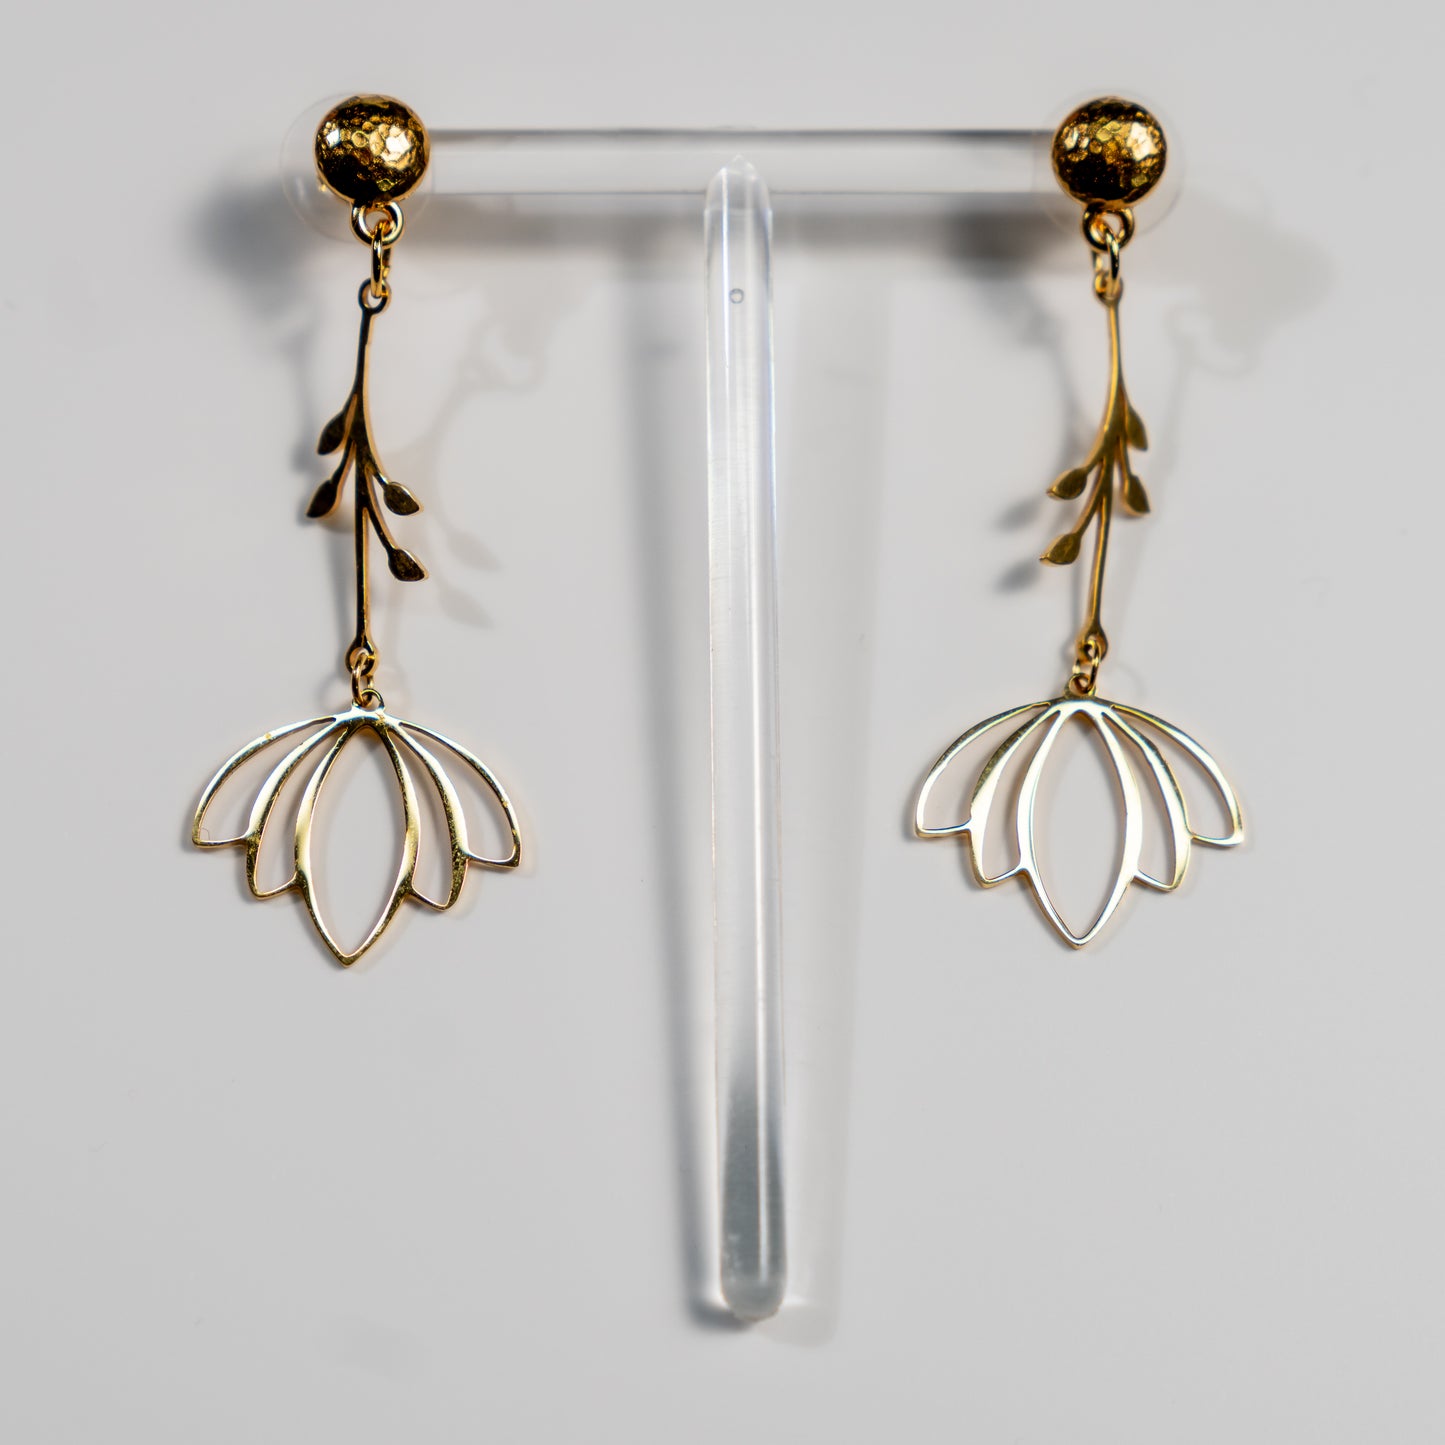 Stainless steel lotus earrings